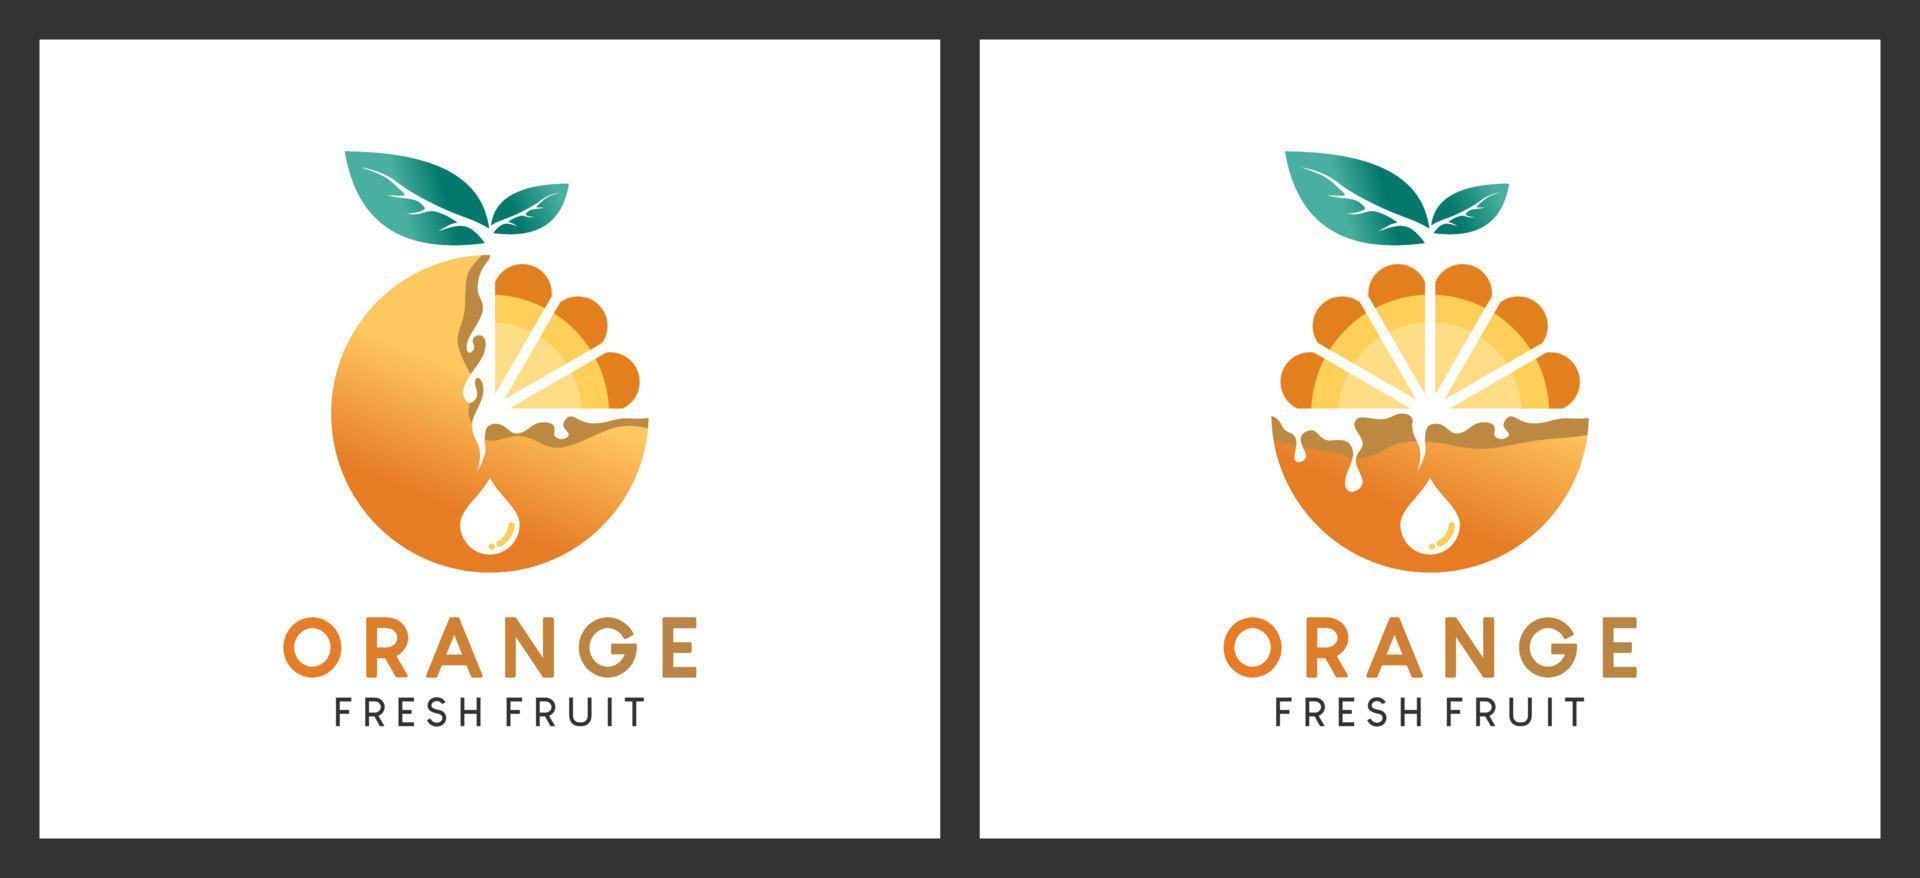 arancia frutta logo design con pastello colore concetto, vettore illustrazione di cibo e bevanda logo